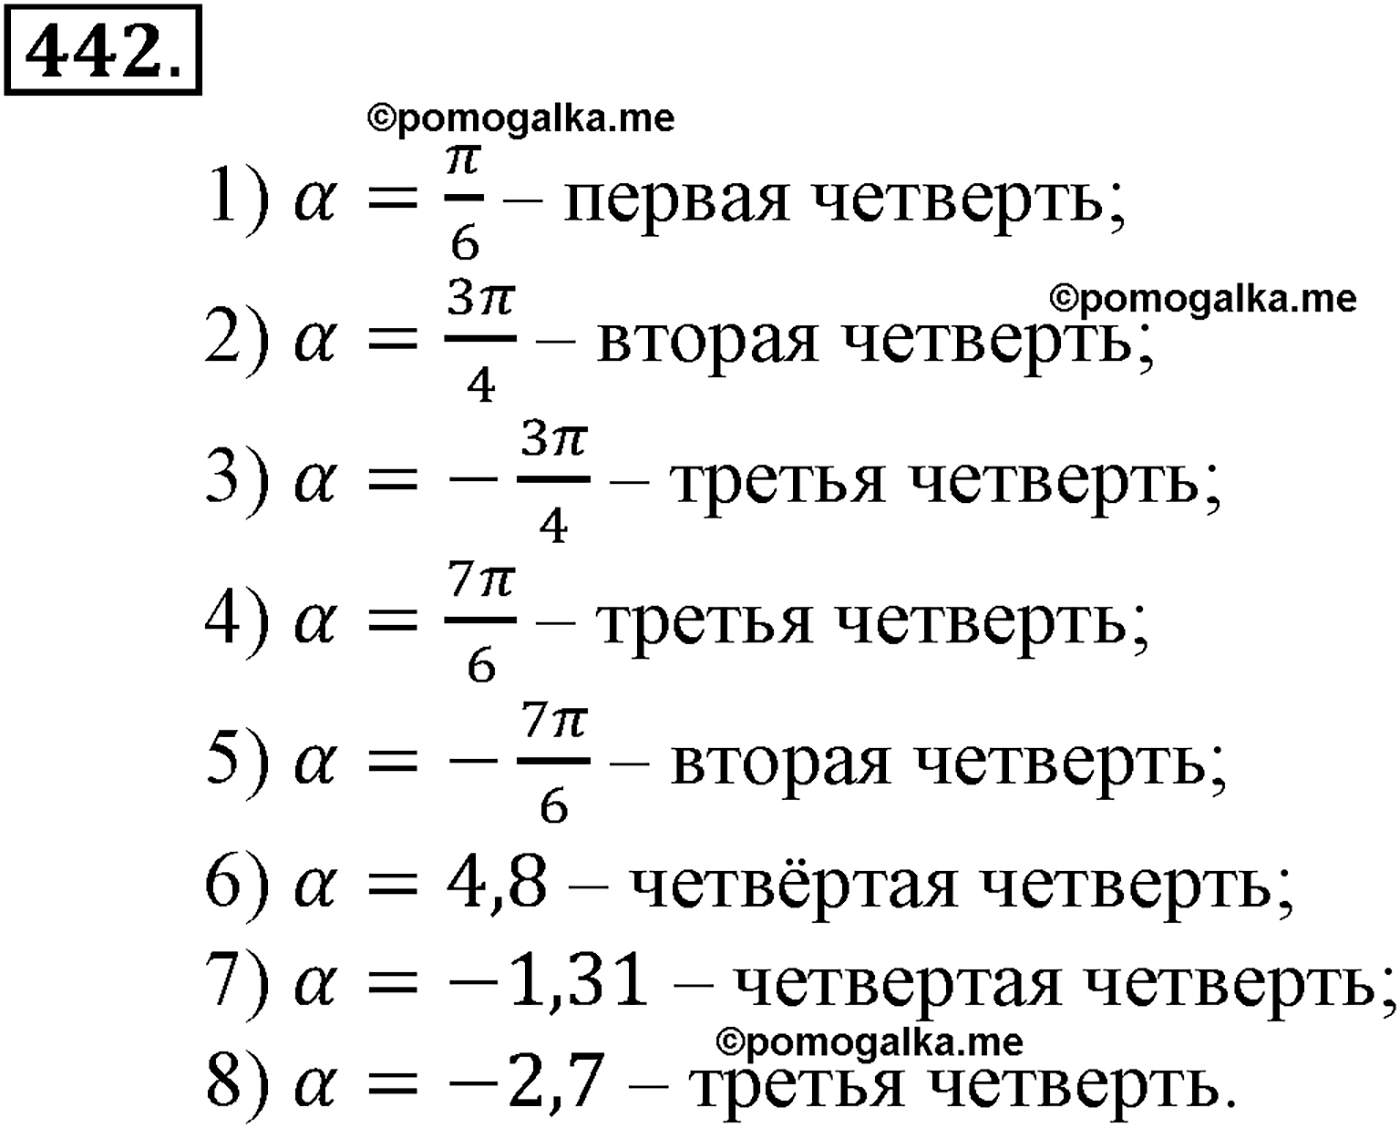 разбор задачи №442 по алгебре за 10-11 класс из учебника Алимова, Колягина